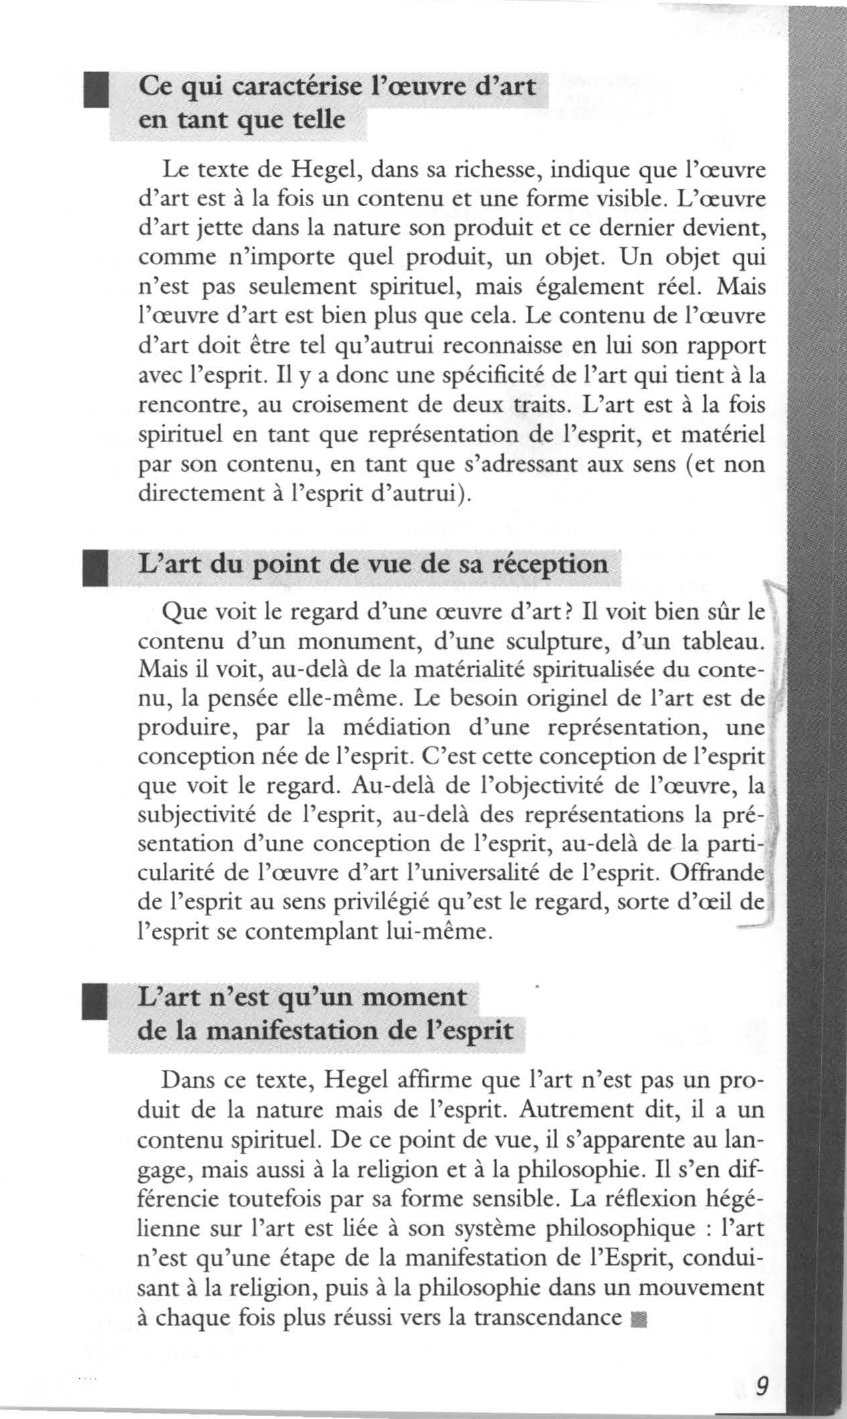 Prévisualisation du document Hegel, Esthétique (1835), traduit par S. Jankélévitch, Éd. Flammarion, coll. « Champs », 1979, tome III p. 31.